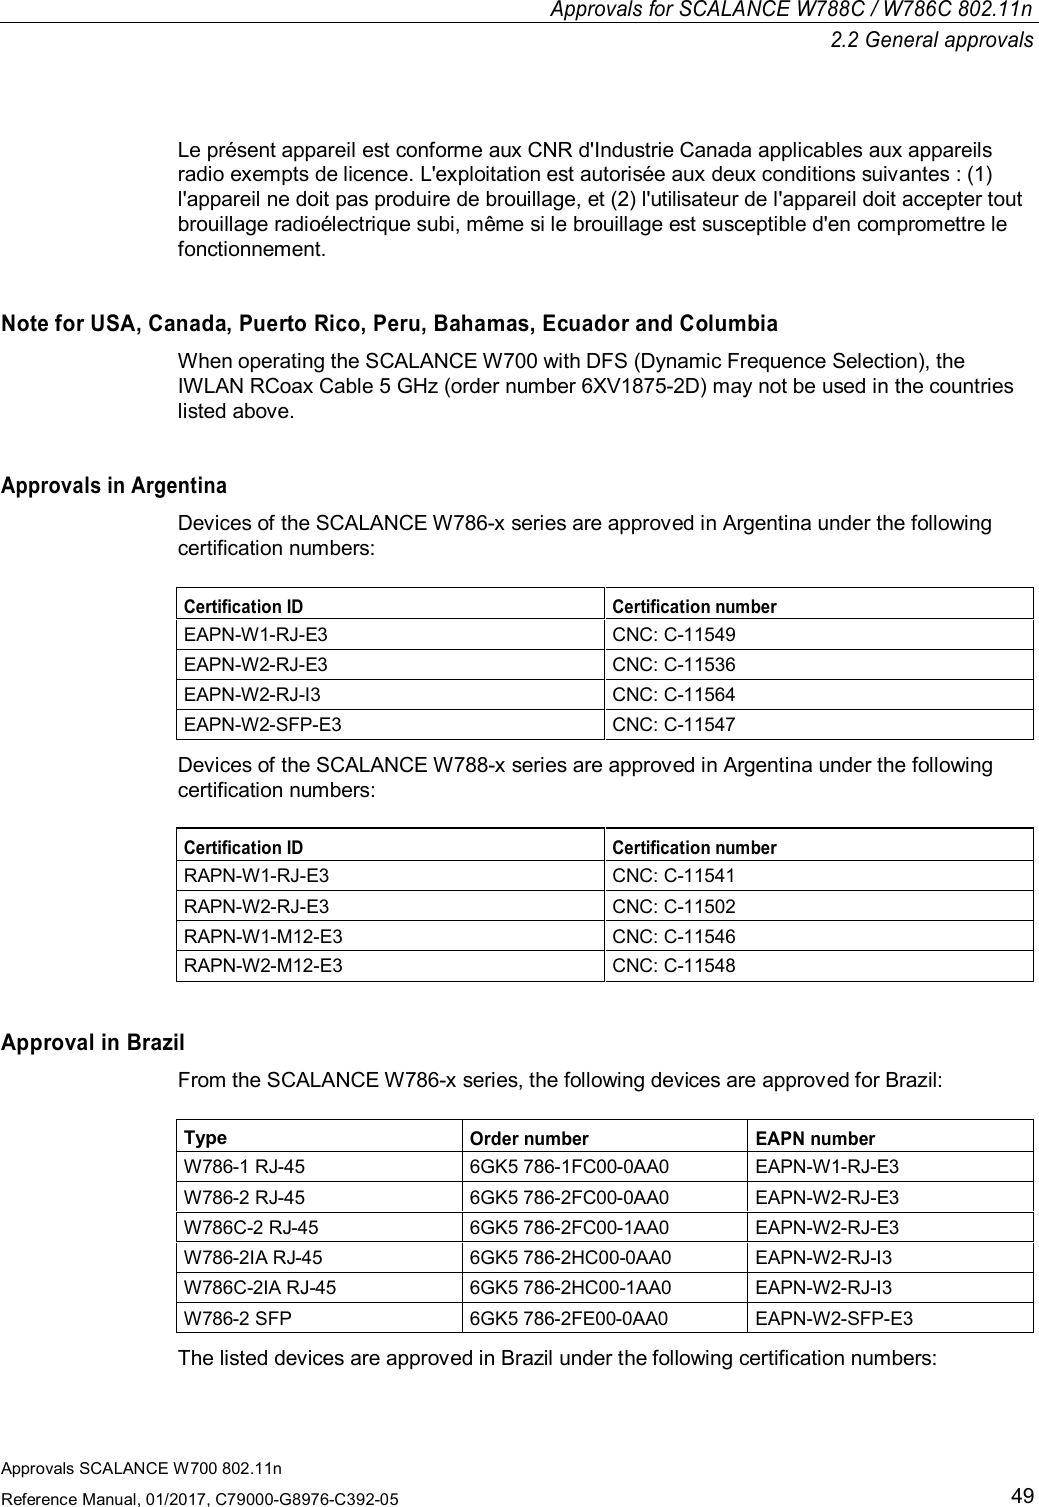 Approvals SCALANCE W700 802.11nReference Manual, 01/2017, C79000-G8976-C392-0549Approvals for SCALANCE W788C/ W786C 802.11n2.2 General approvalsLe présent appareil est conforme aux CNR d&apos;Industrie Canada applicables aux appareilsradio exempts de licence. L&apos;exploitation est autorisée aux deux conditions suivantes : (1)l&apos;appareil ne doit pas produire de brouillage, et (2) l&apos;utilisateur de l&apos;appareil doit accepter toutbrouillage radioélectrique subi, même si le brouillage est susceptible d&apos;en compromettre lefonctionnement.Note for USA, Canada, Puerto Rico, Peru, Bahamas, Ecuador and ColumbiaWhen operating the SCALANCE W700 with DFS (Dynamic Frequence Selection), theIWLAN RCoax Cable 5 GHz (order number 6XV1875-2D) may not be used in the countrieslisted above.Approvals in ArgentinaDevices of the SCALANCE W786-x series are approved in Argentina under the followingcertification numbers:Certification ID Certification numberEAPN-W1-RJ-E3 CNC: C-11549EAPN-W2-RJ-E3 CNC: C-11536EAPN-W2-RJ-I3 CNC: C-11564EAPN-W2-SFP-E3 CNC: C-11547Devices of the SCALANCE W788-x series are approved in Argentina under the followingcertification numbers:Certification ID Certification numberRAPN-W1-RJ-E3 CNC: C-11541RAPN-W2-RJ-E3 CNC: C-11502RAPN-W1-M12-E3 CNC: C-11546RAPN-W2-M12-E3 CNC: C-11548Approval in BrazilFrom the SCALANCE W786-x series, the following devices are approved for Brazil:TypeOrder number EAPN numberW786-1 RJ-45 6GK5 786-1FC00-0AA0 EAPN-W1-RJ-E3W786-2 RJ-45 6GK5 786-2FC00-0AA0 EAPN-W2-RJ-E3W786C-2 RJ-45 6GK5 786-2FC00-1AA0 EAPN-W2-RJ-E3W786-2IA RJ-45 6GK5 786-2HC00-0AA0 EAPN-W2-RJ-I3W786C-2IA RJ-45 6GK5 786-2HC00-1AA0 EAPN-W2-RJ-I3W786-2 SFP 6GK5 786-2FE00-0AA0 EAPN-W2-SFP-E3The listed devices are approved in Brazil under the following certification numbers: